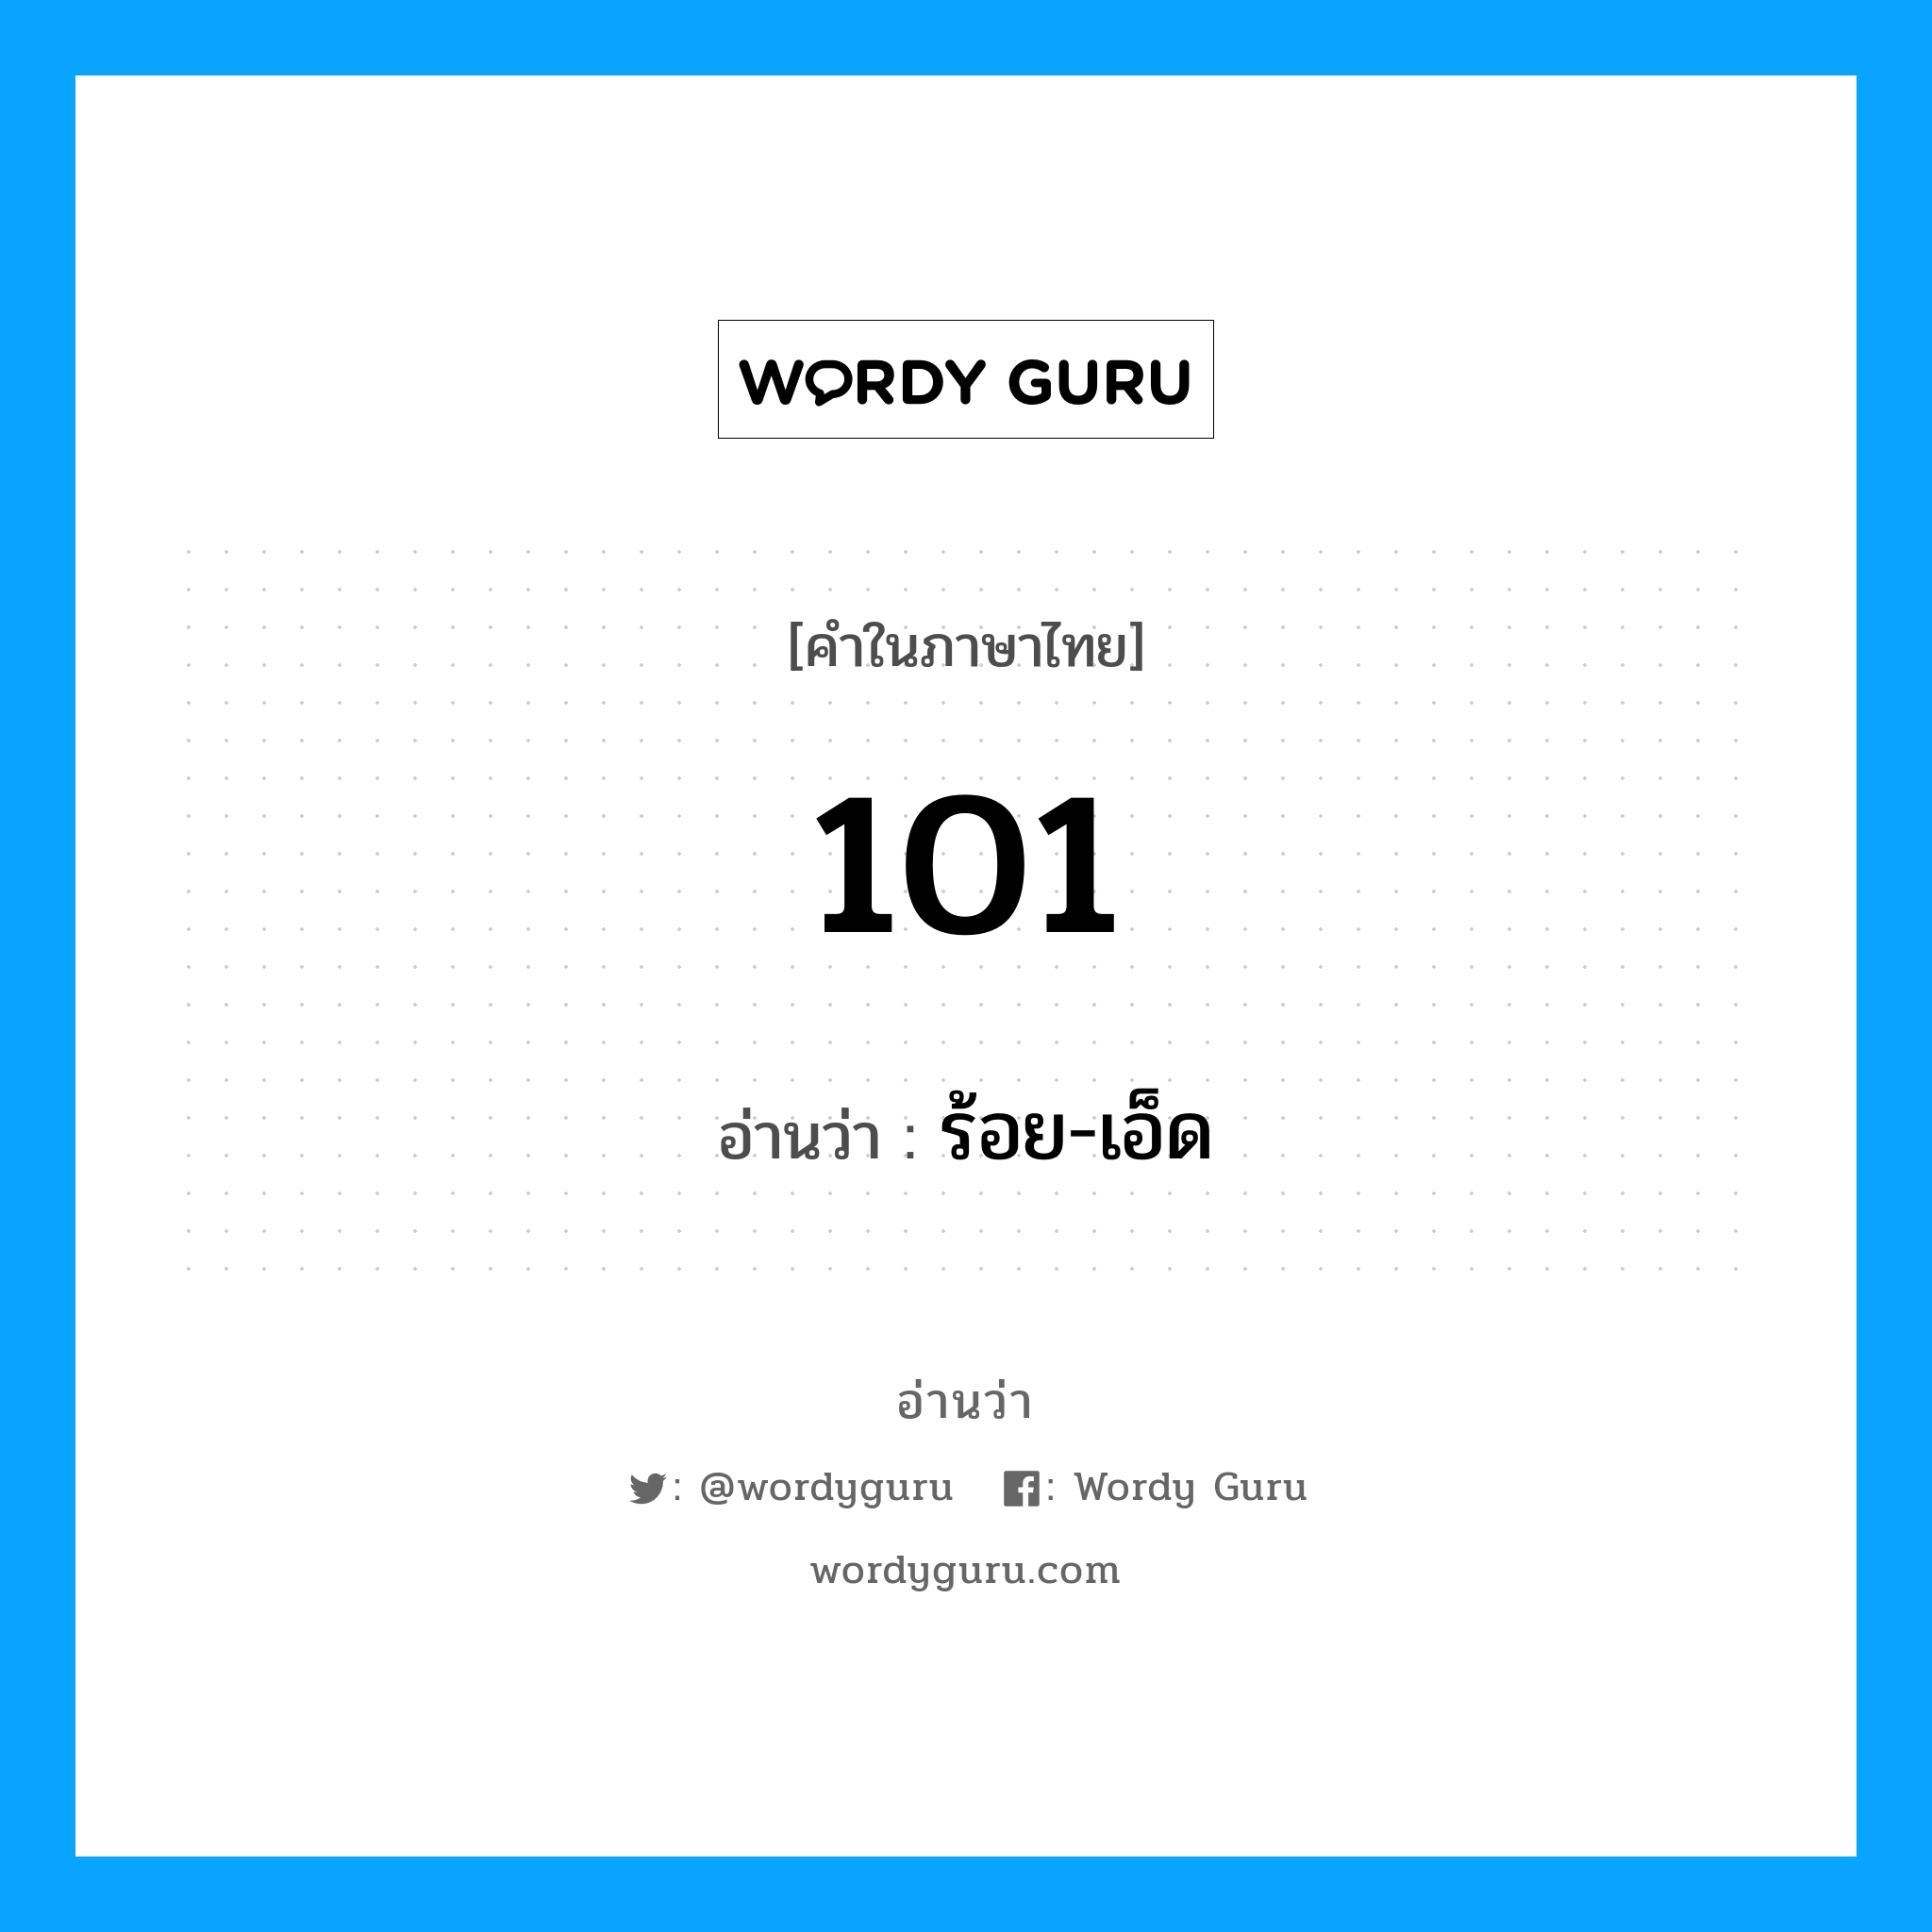 ร้อย-เอ็ด เป็นคำอ่านของคำไหน?, คำในภาษาไทย ร้อย-เอ็ด อ่านว่า 101